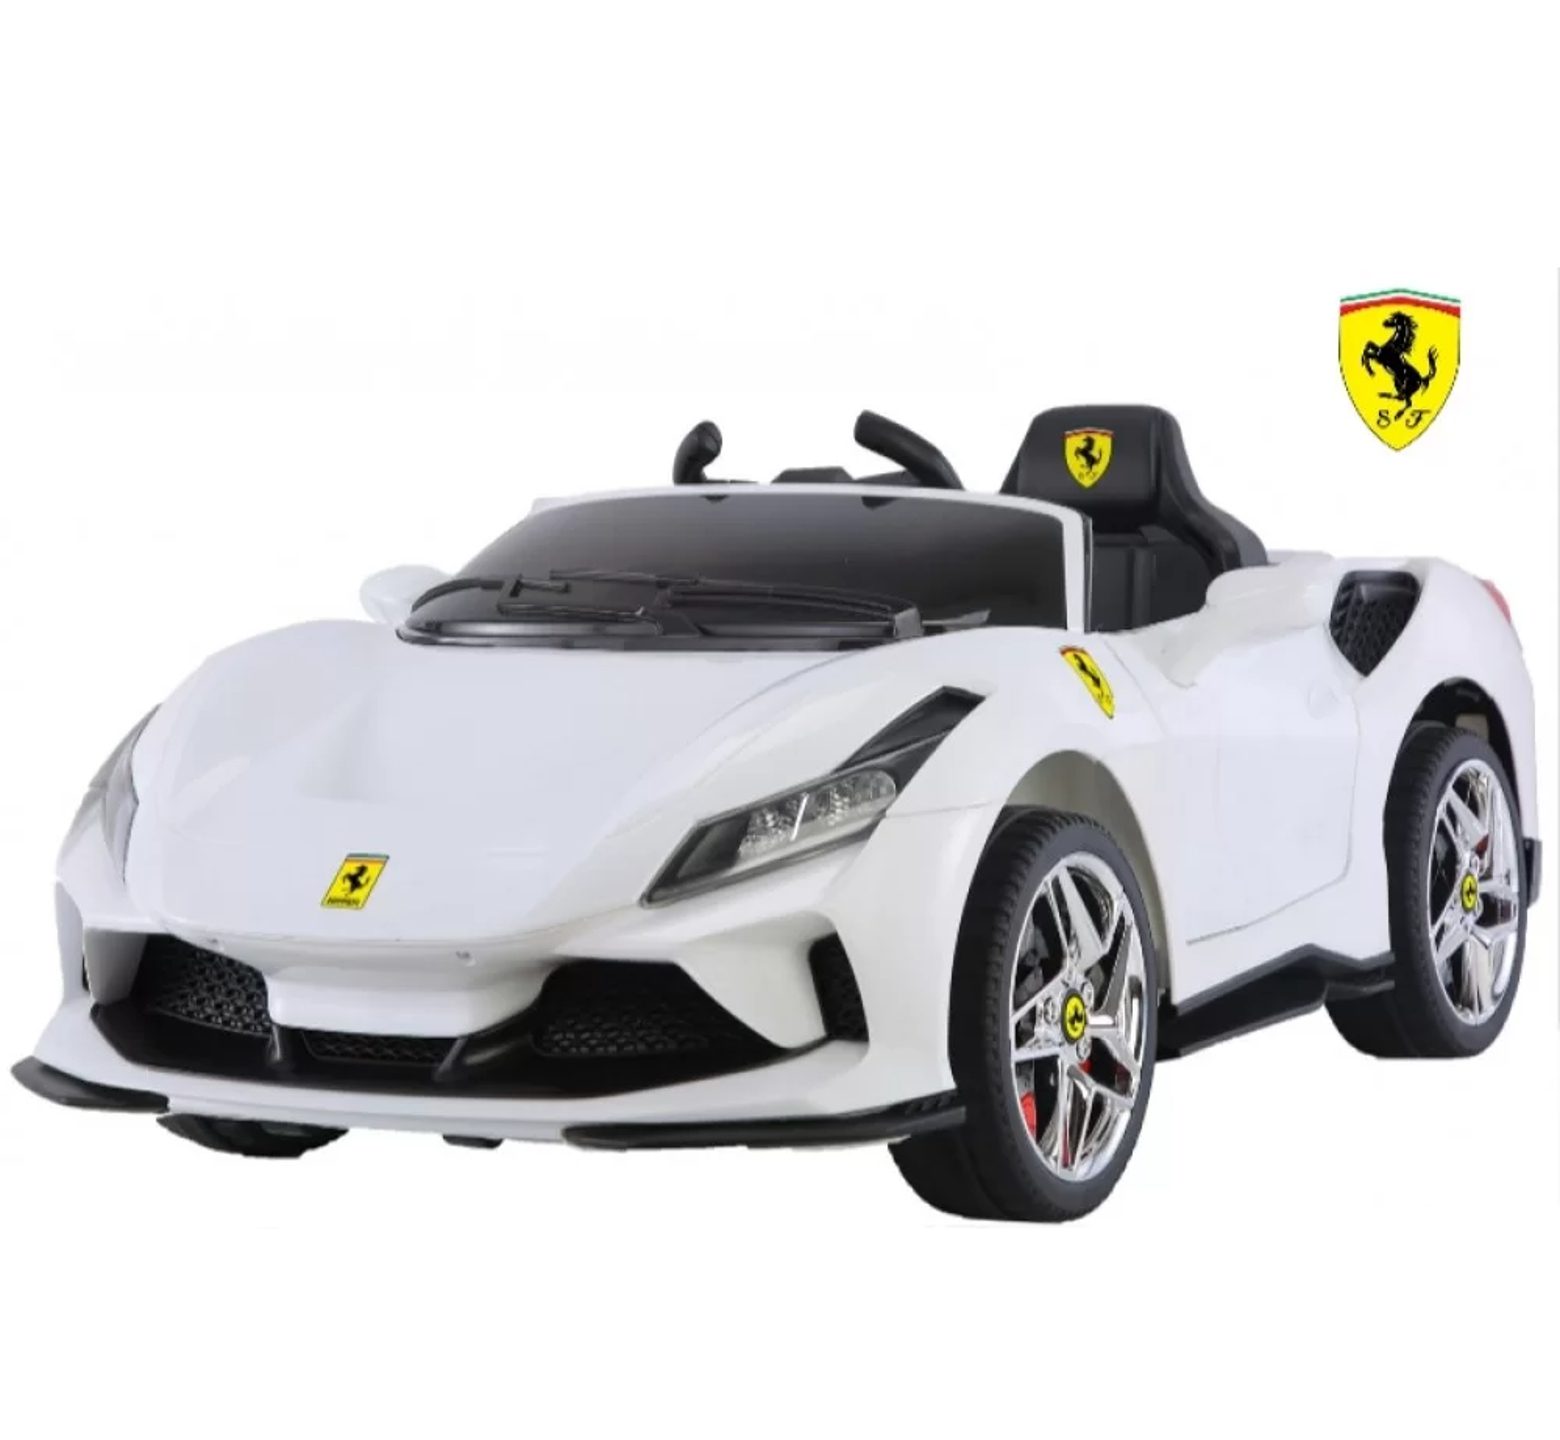 Ηλεκτροκίνητο Παιδικό Αυτοκίνητο 12V Licensed Ferrari με 4 μοτέρ σε άσπρο χρώμα